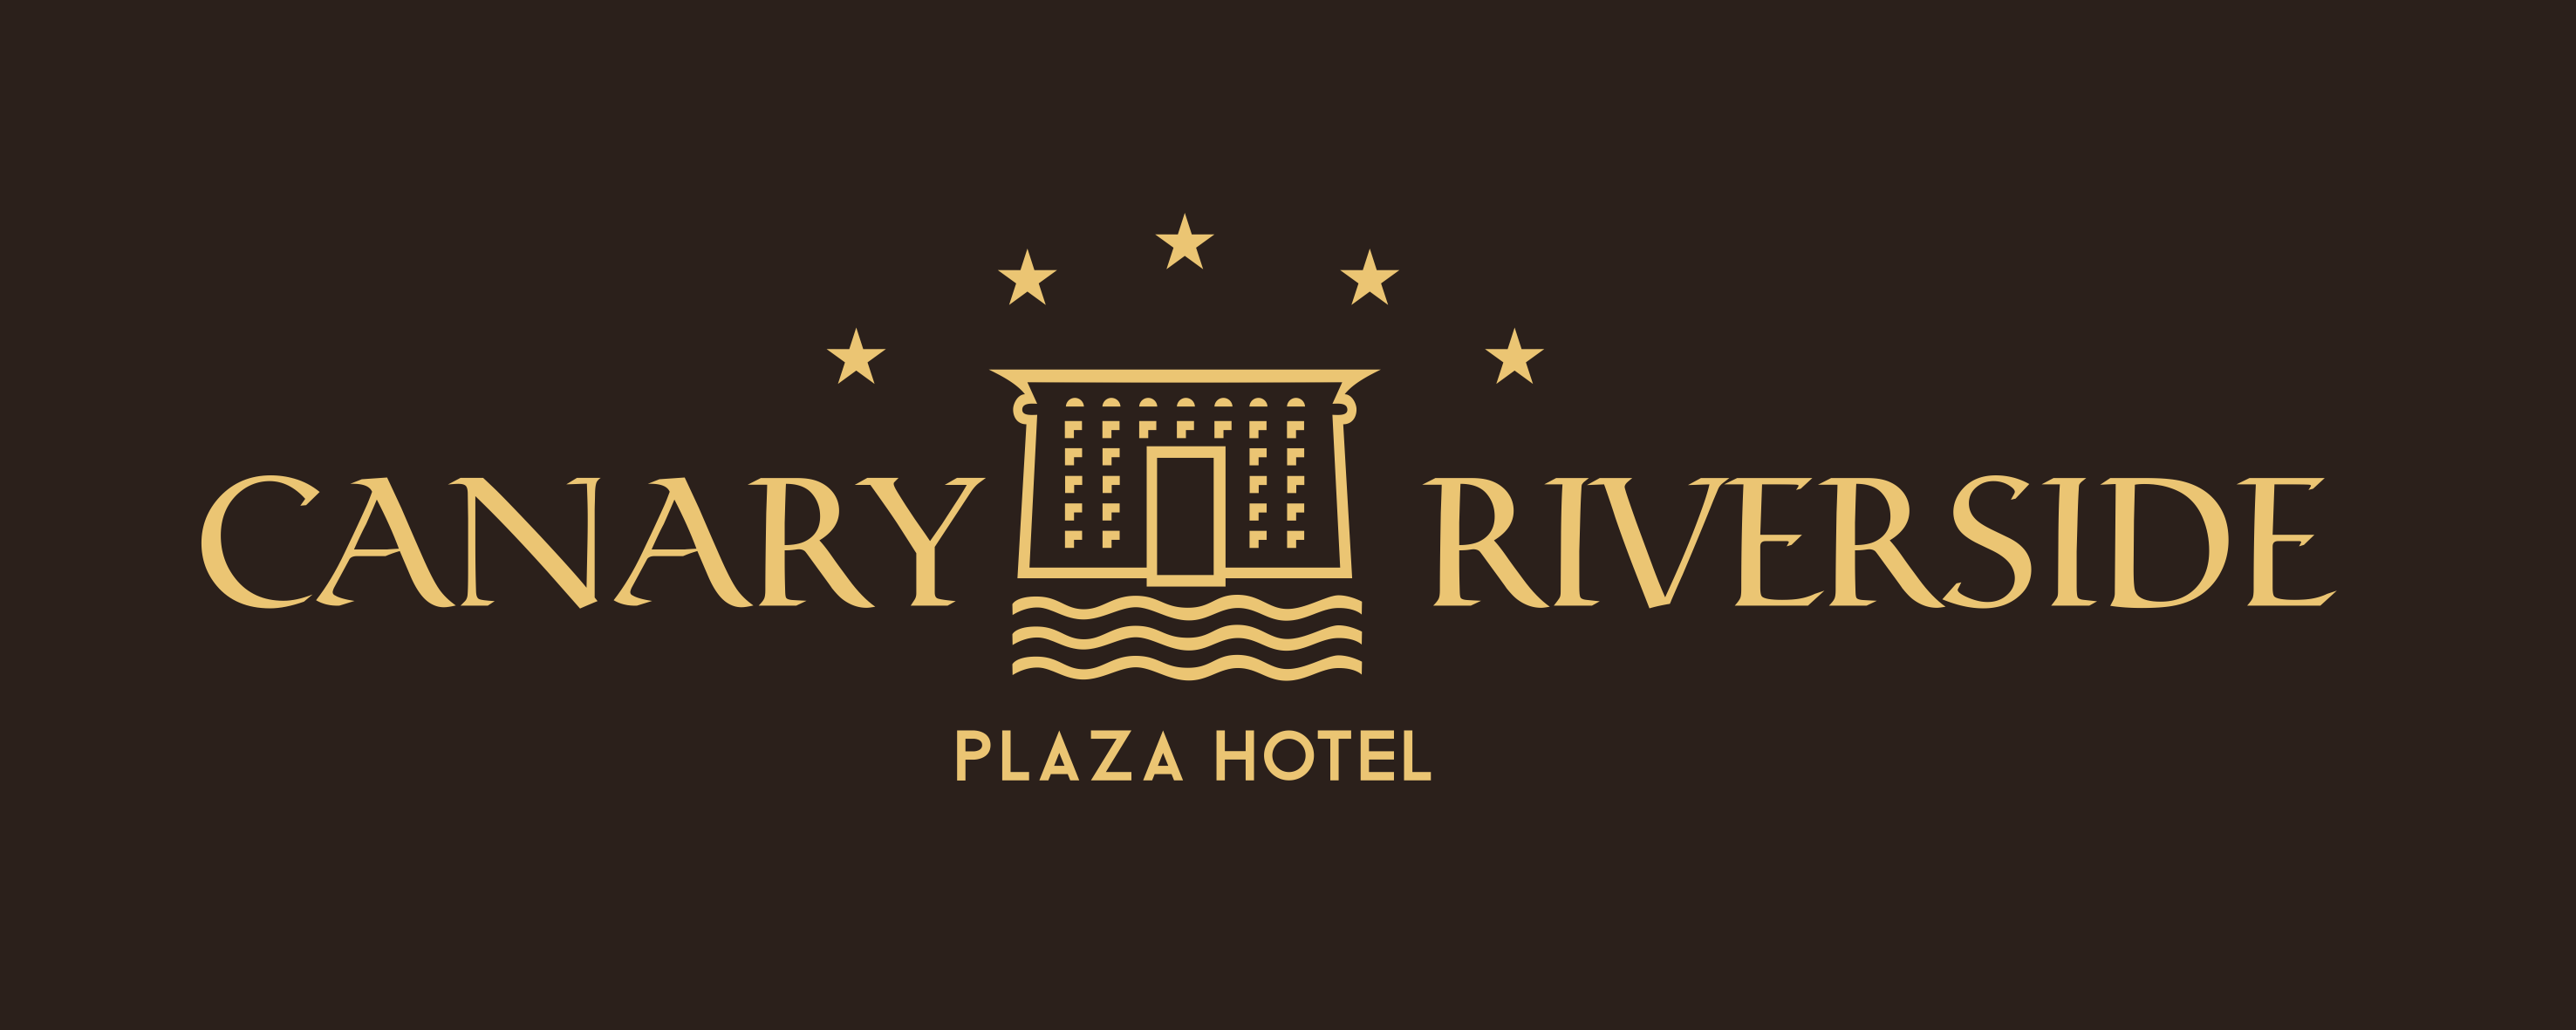 Canary Riverside Plaza Hotel Logo